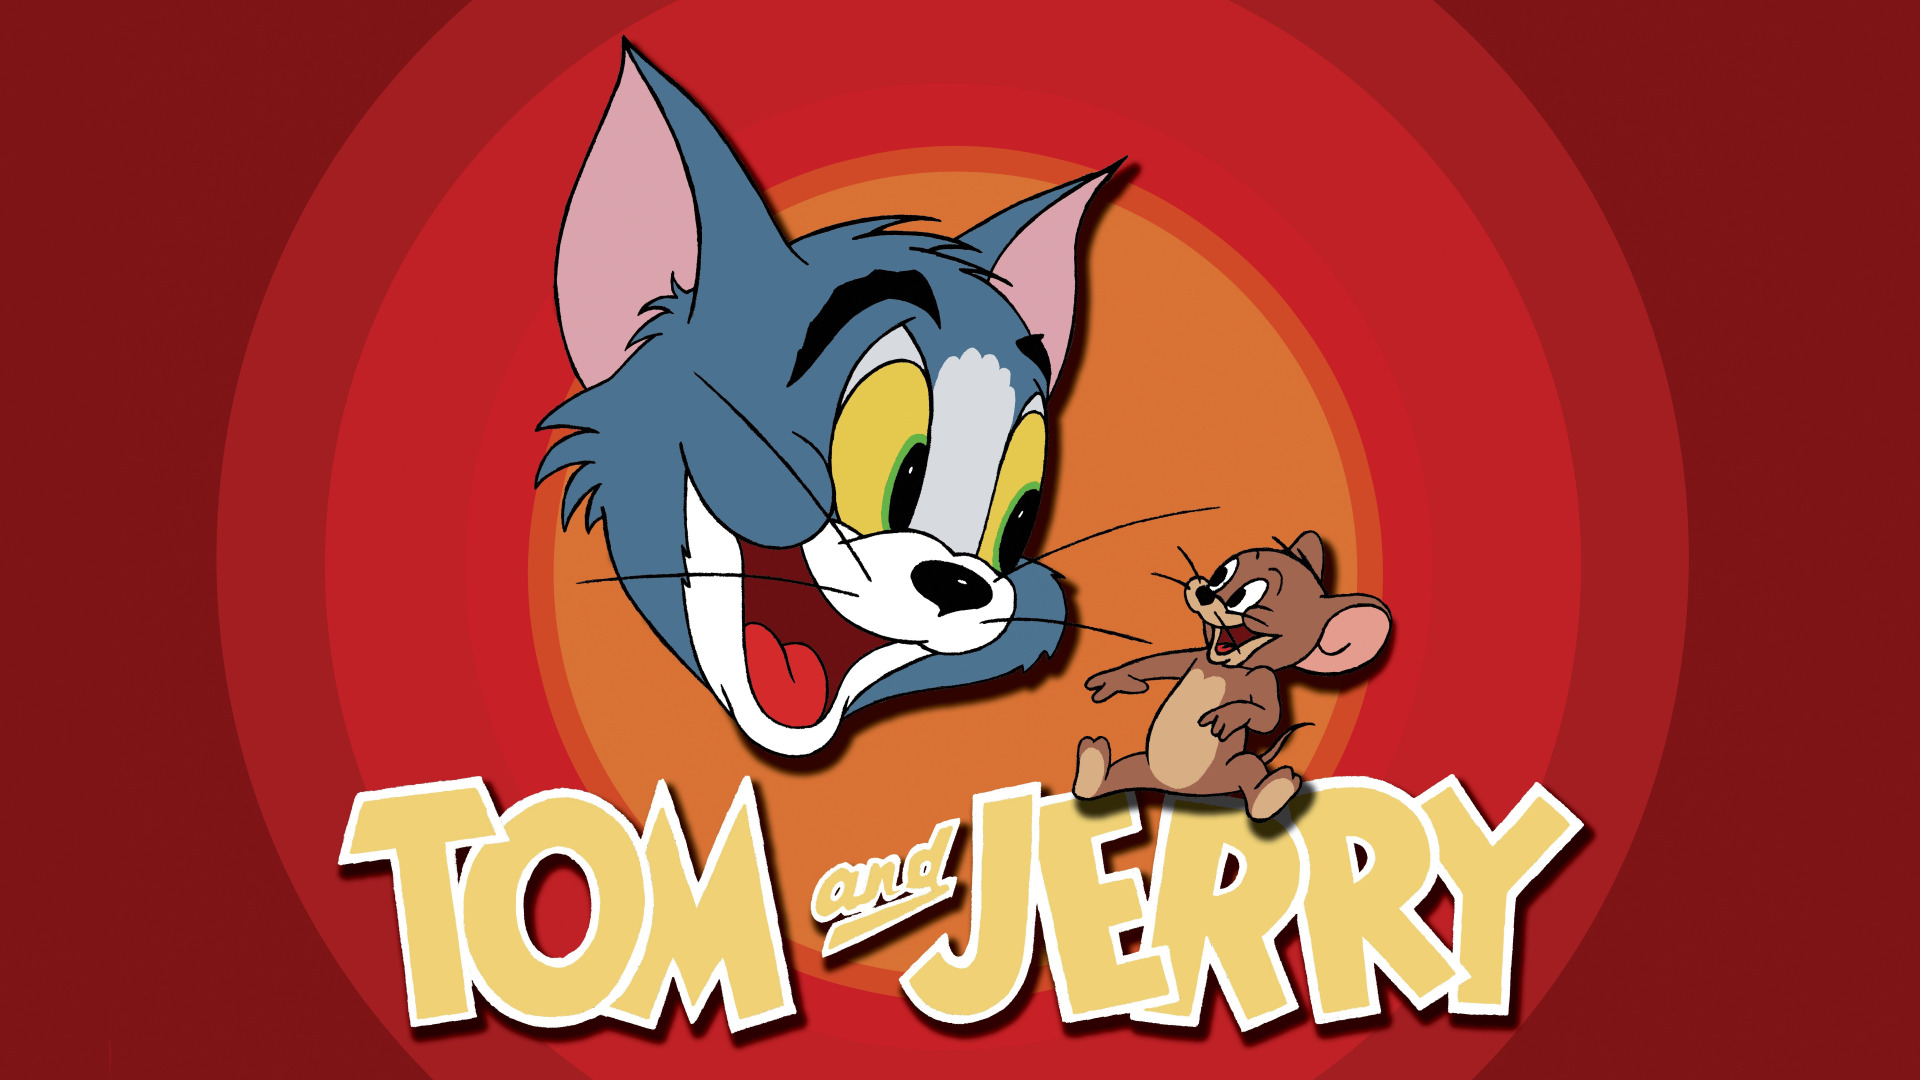 Том и джерри режиссер. Том и Джерри Tom and Jerry. 20 Февраля 1940 том и Джерри. Том и Джерри 2022.